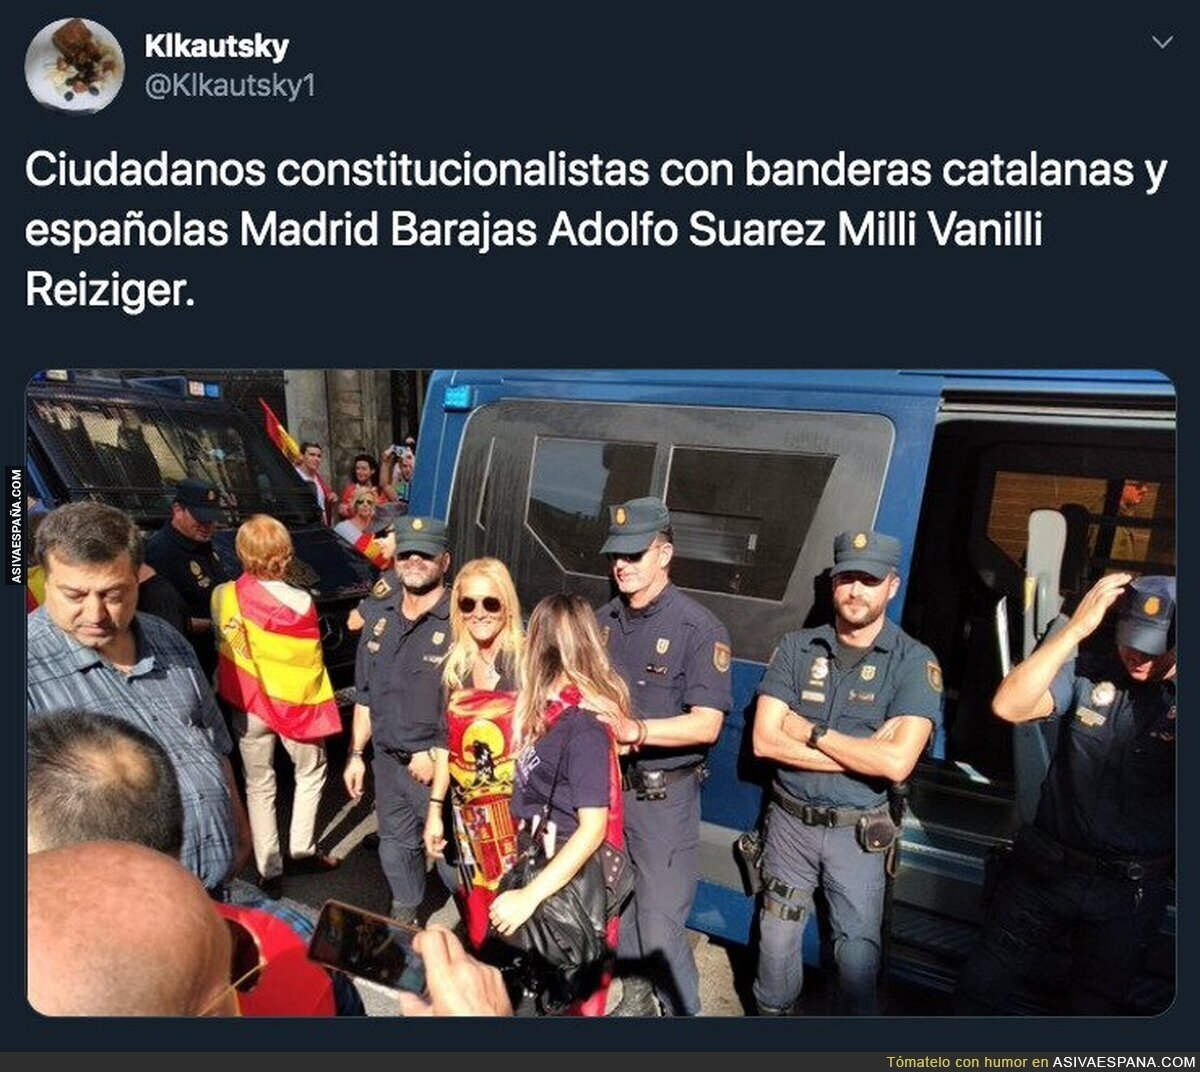 Gran escándalo de varios policías haciéndose fotos con una mujer con una bandera fascista